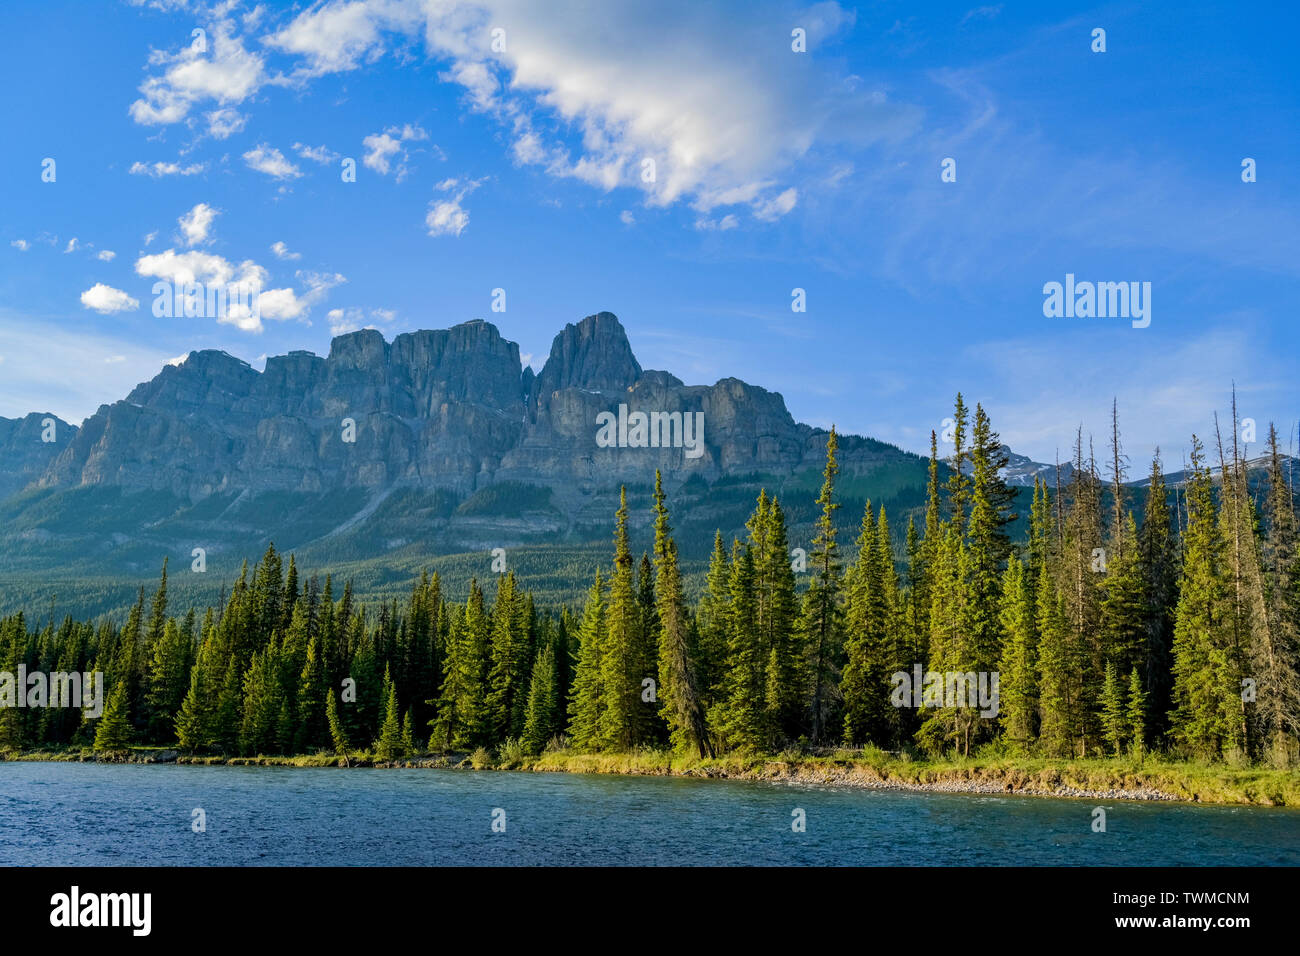 Castle Mountain, Bow River, Prk Nacional de Banff, Alberta, Canadá Foto de stock